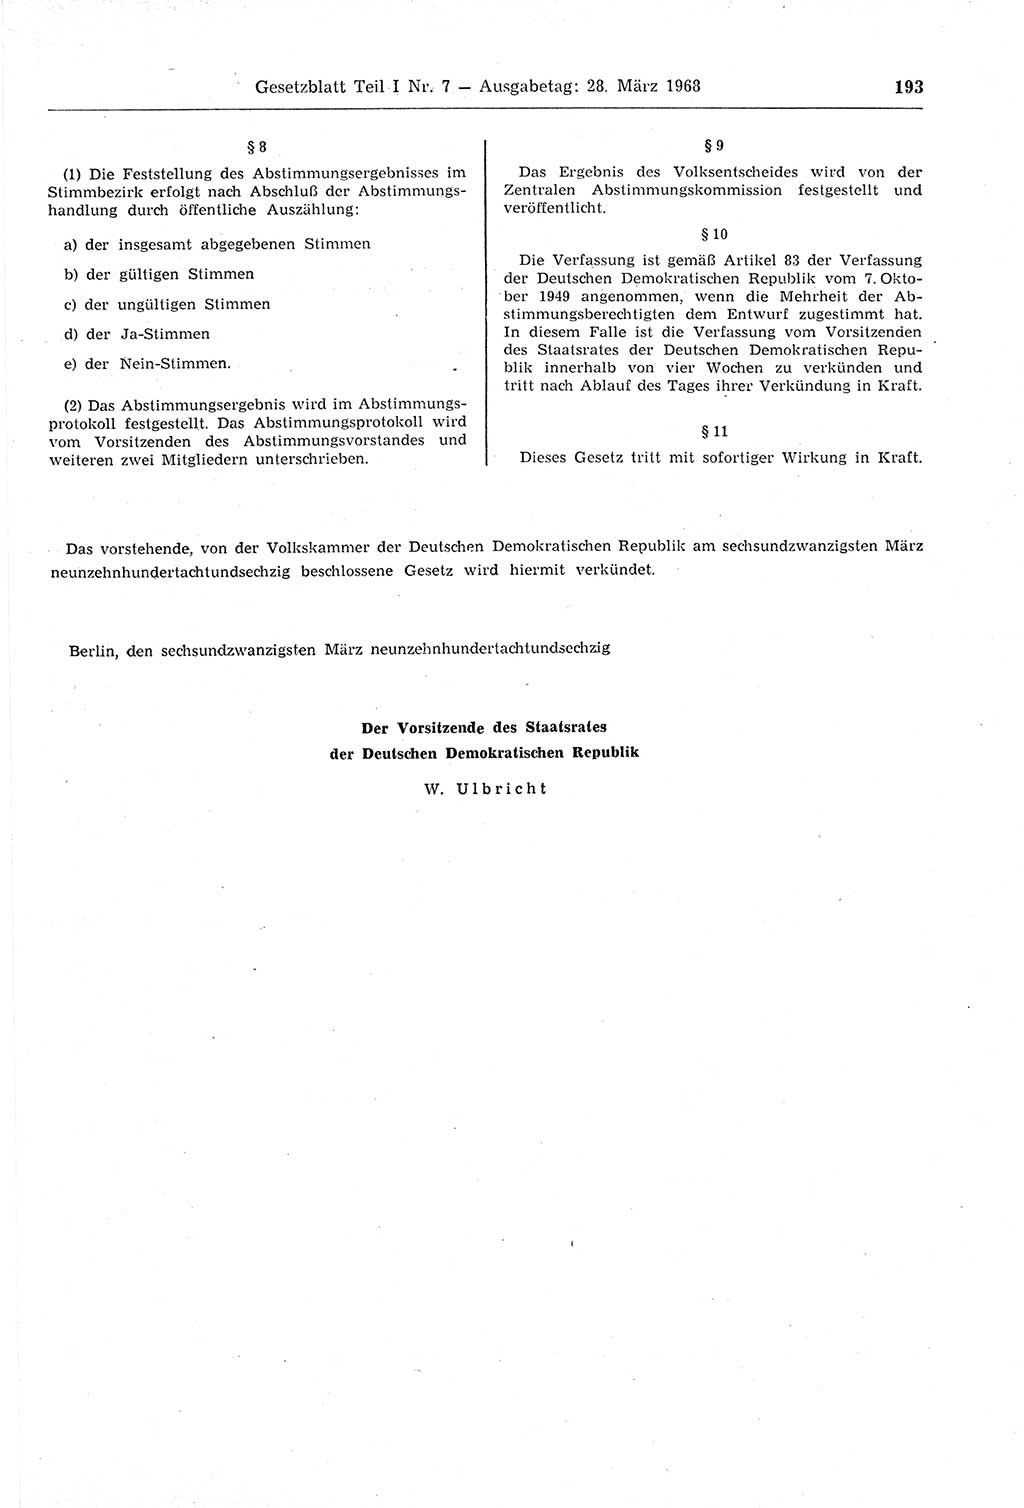 Gesetzblatt (GBl.) der Deutschen Demokratischen Republik (DDR) Teil Ⅰ 1968, Seite 193 (GBl. DDR Ⅰ 1968, S. 193)